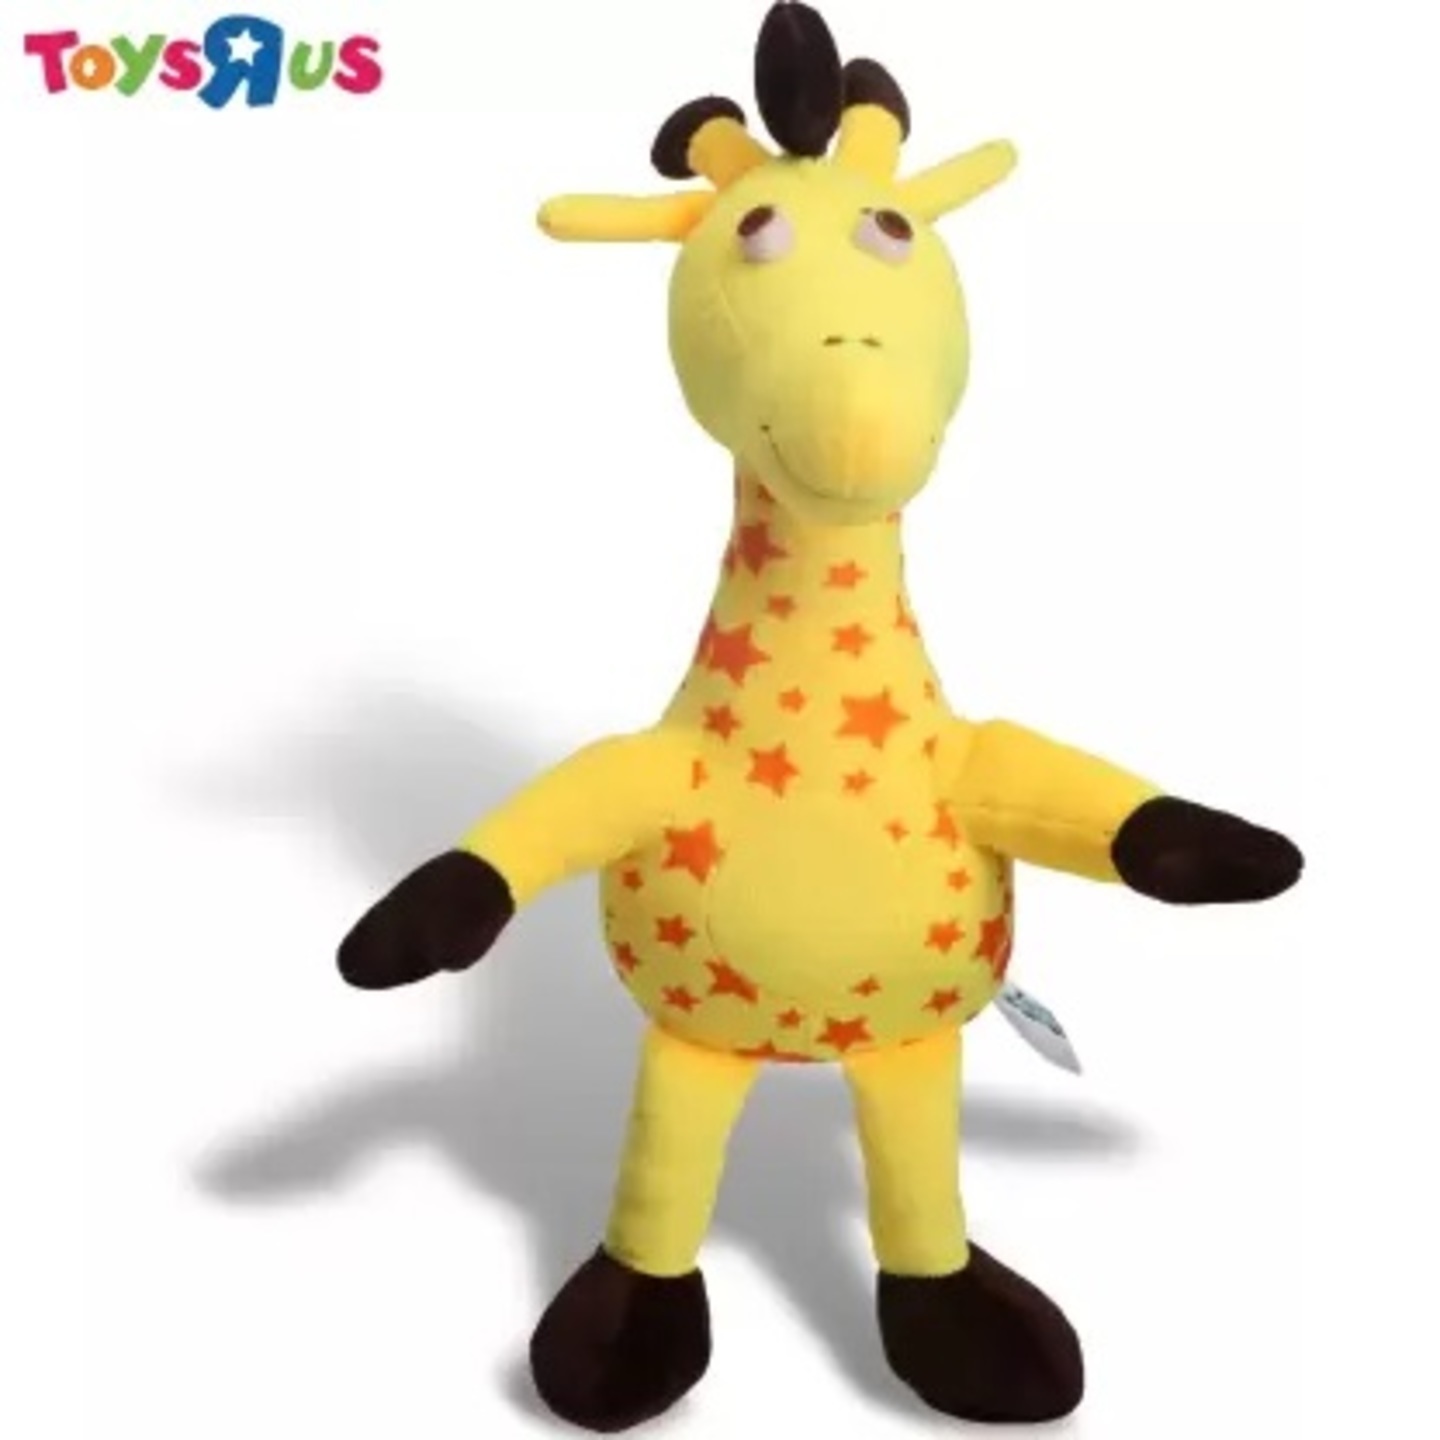 Toys R Us Animal Alley Premium Quality Geoffrey the Giraffe Soft Toy - 35 cm  